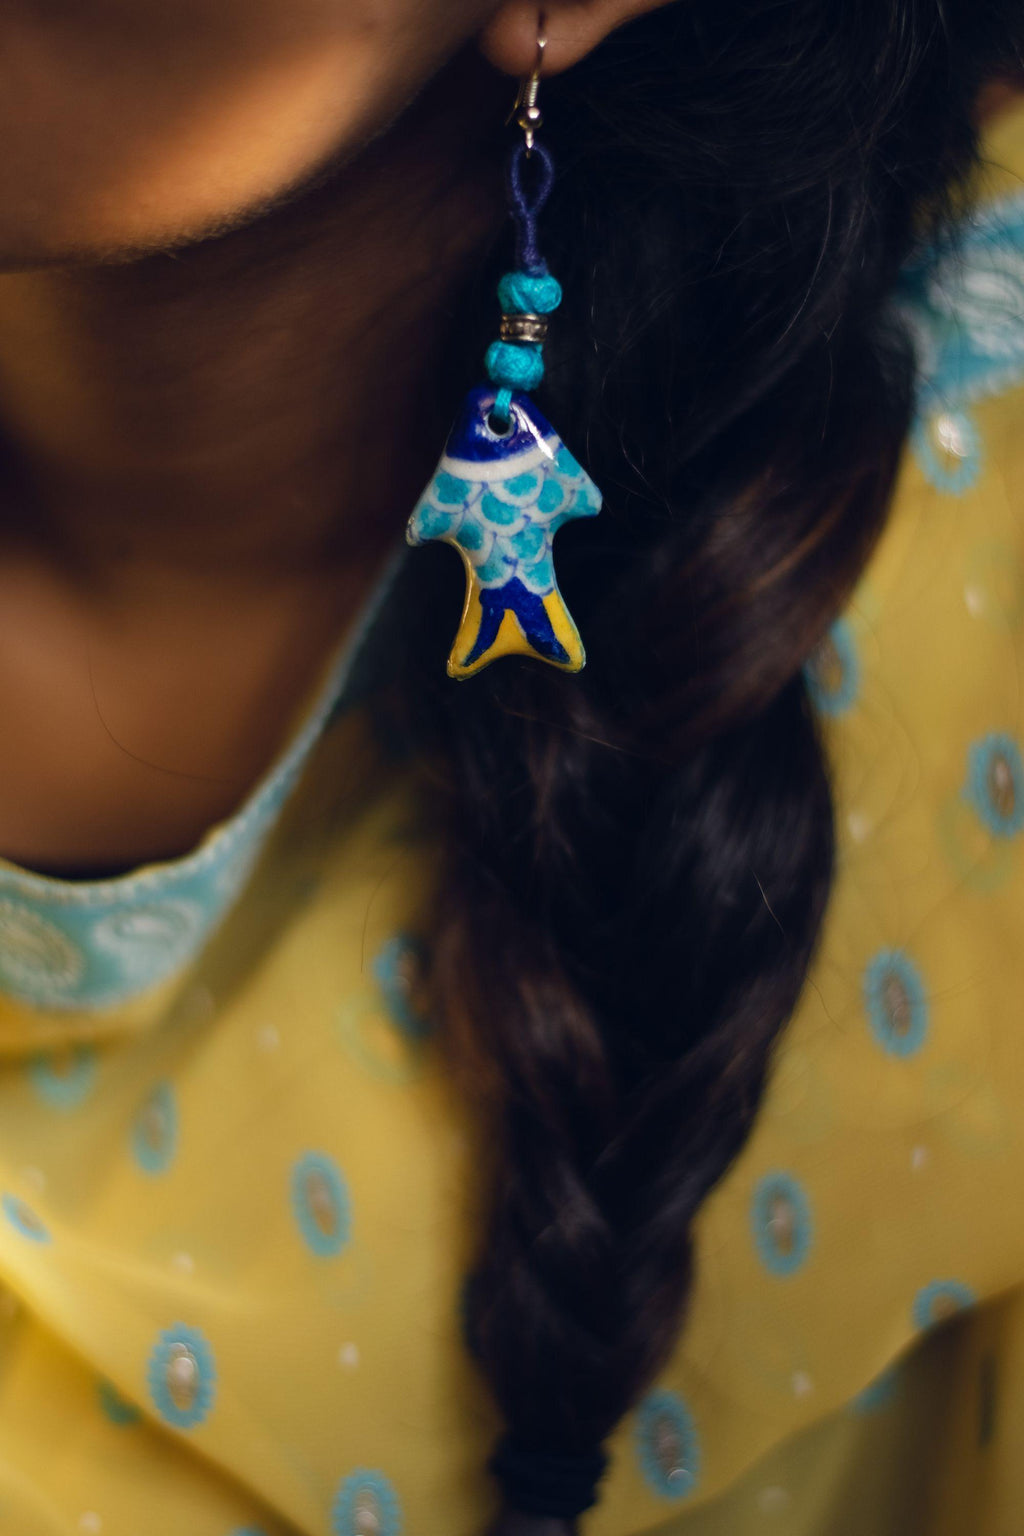 Kaisori Blue Pottery Earrings - Fish earring blue and yellow Kaisori